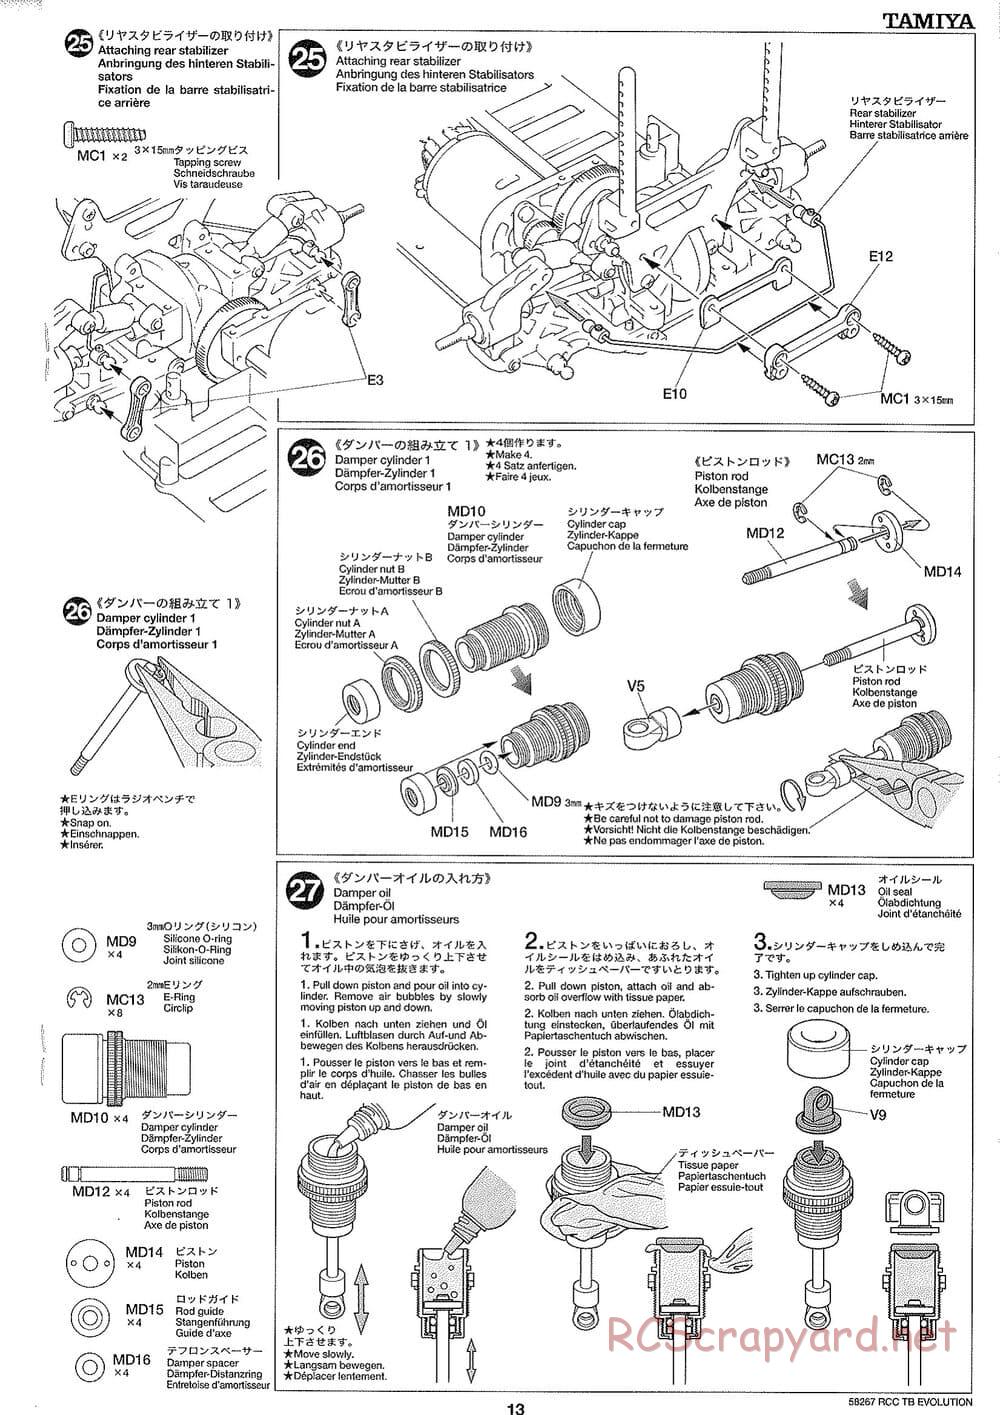 Tamiya - TB Evolution Chassis - Manual - Page 13